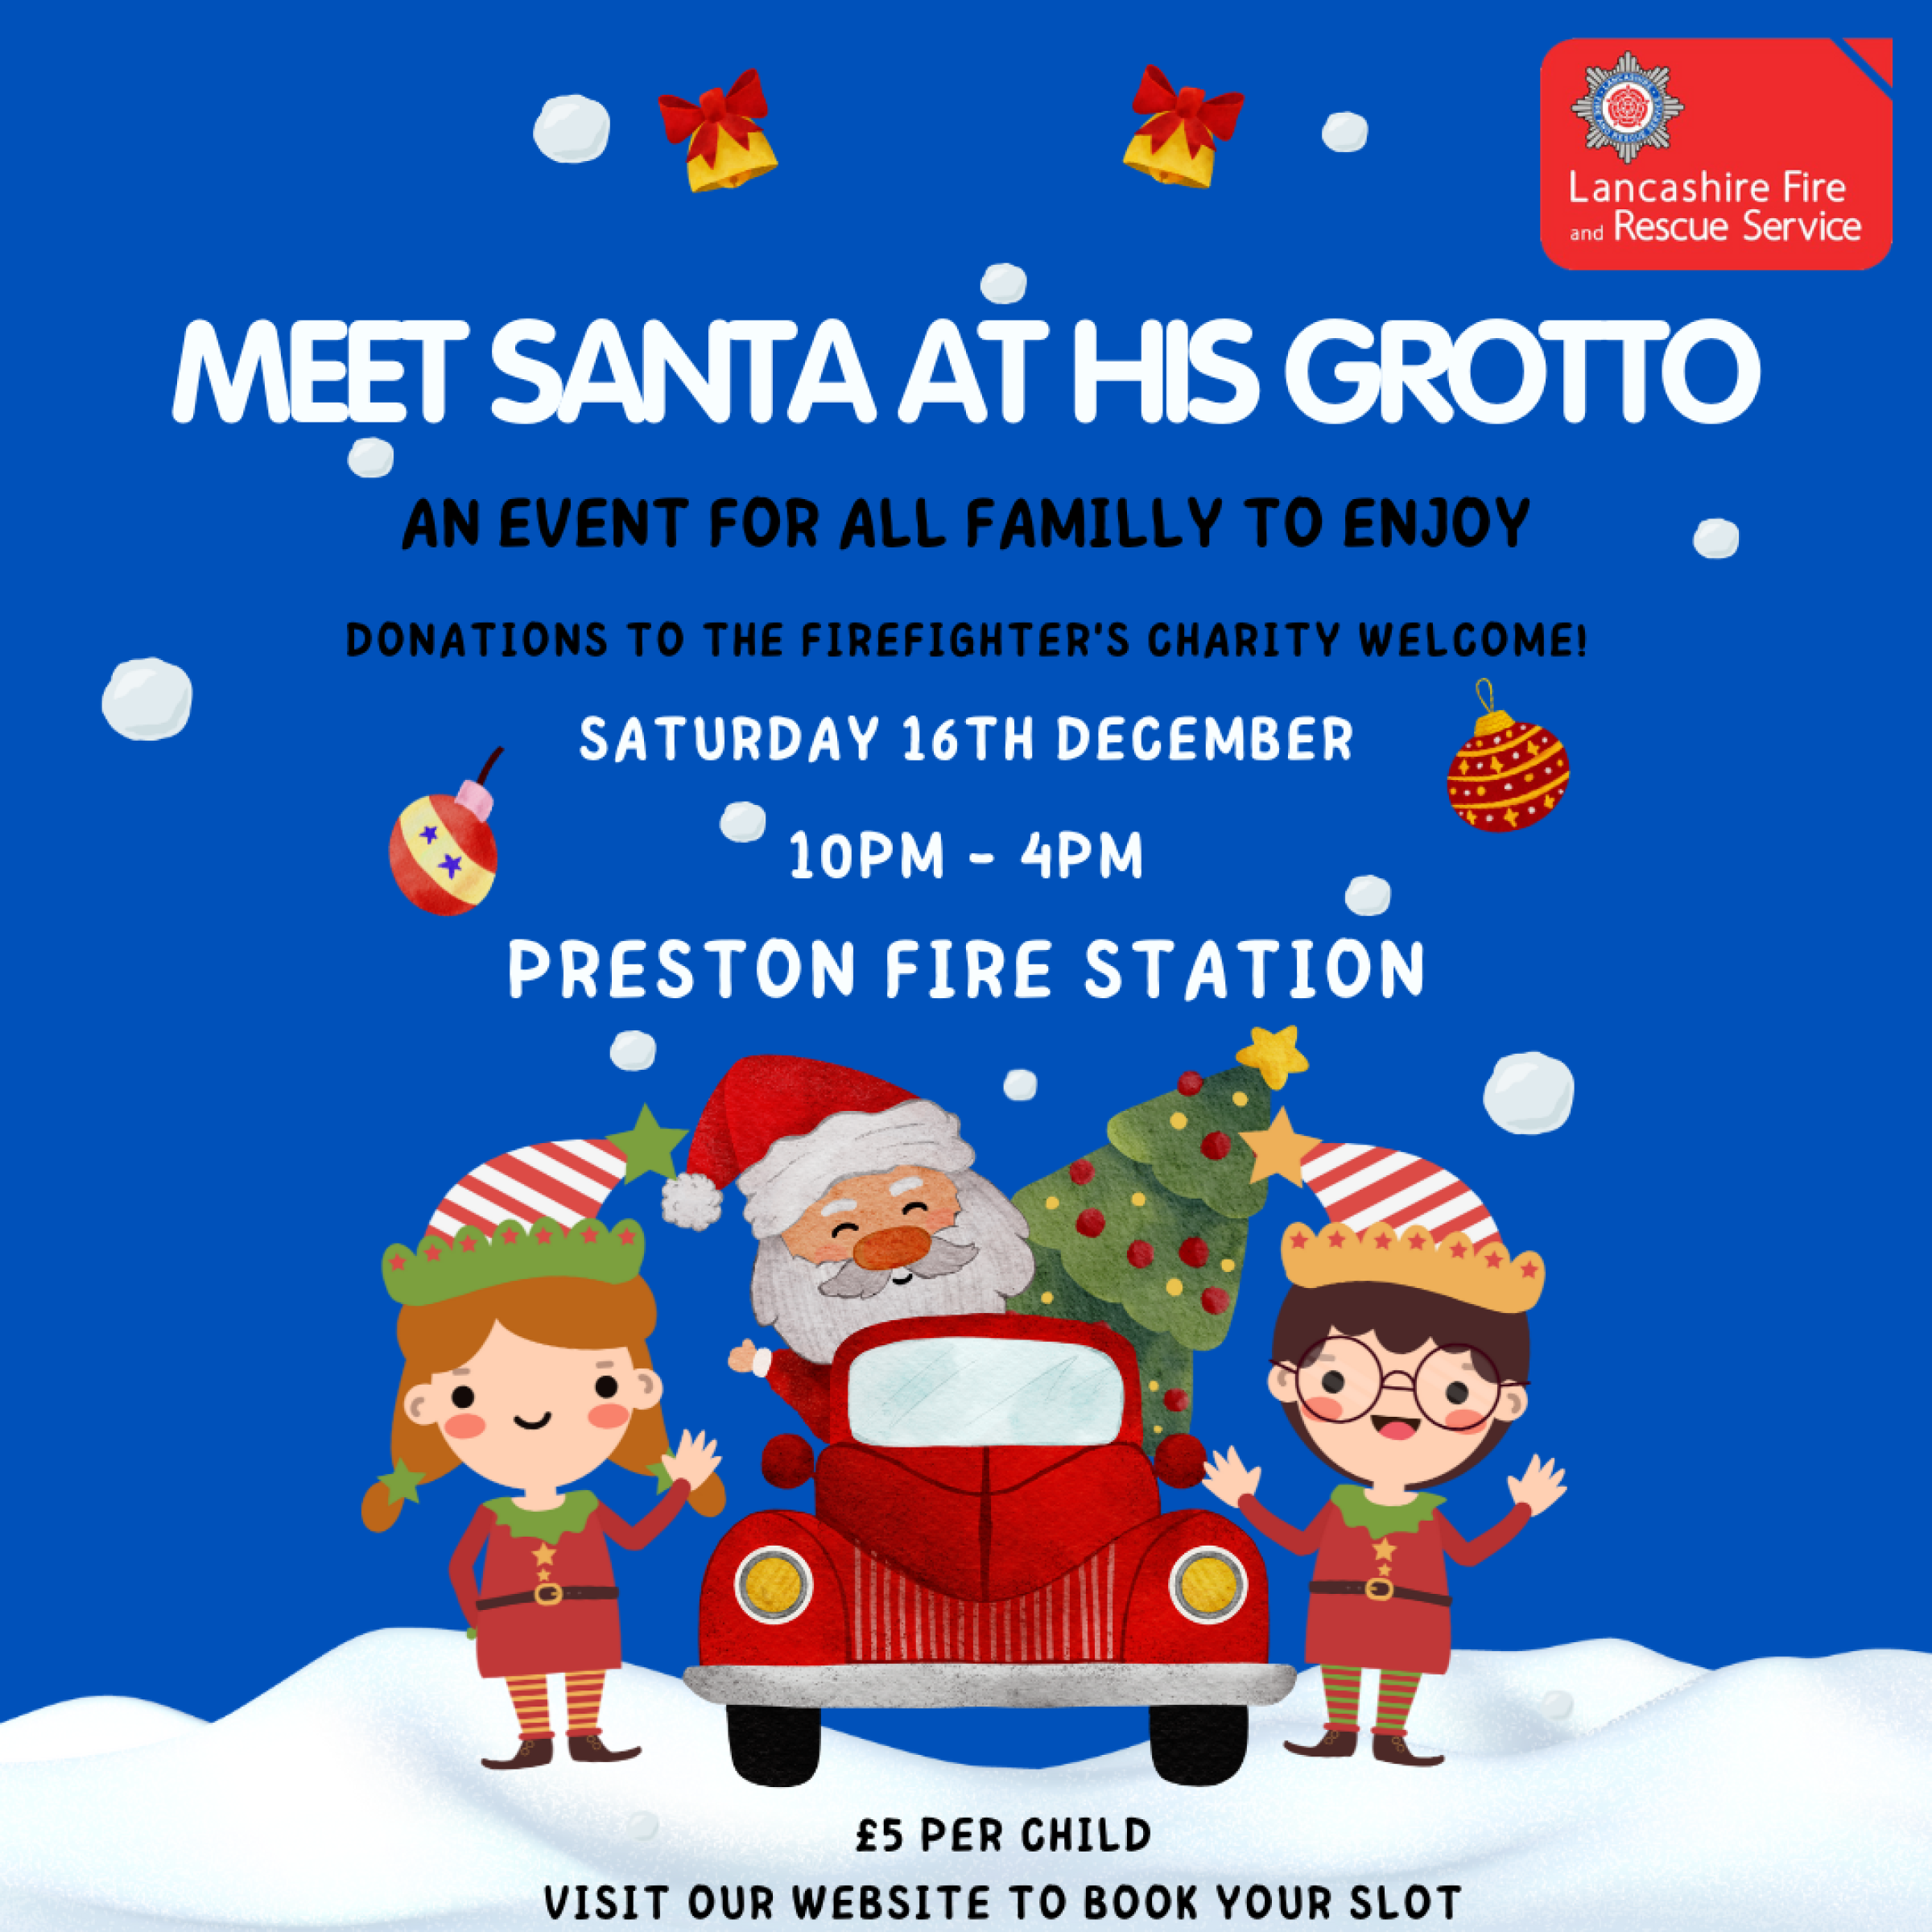 Meet Santa at his Grotto at Preston Fire Station